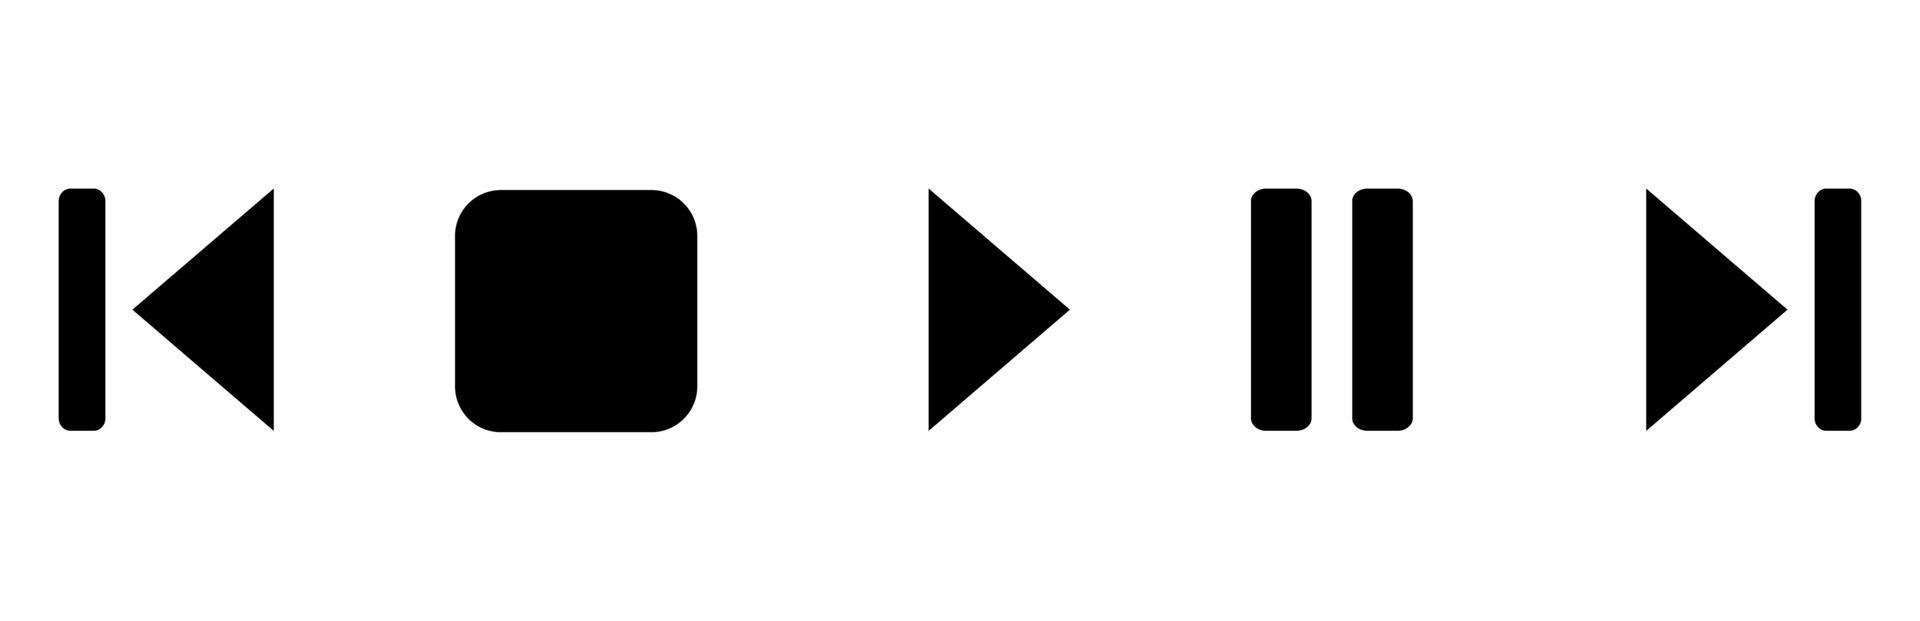 boutons de lecture, d'arrêt et de pause pour le lecteur audio vidéo. ensemble d'icônes de bouton de lecteur multimédia. illustration vectorielle. vecteur